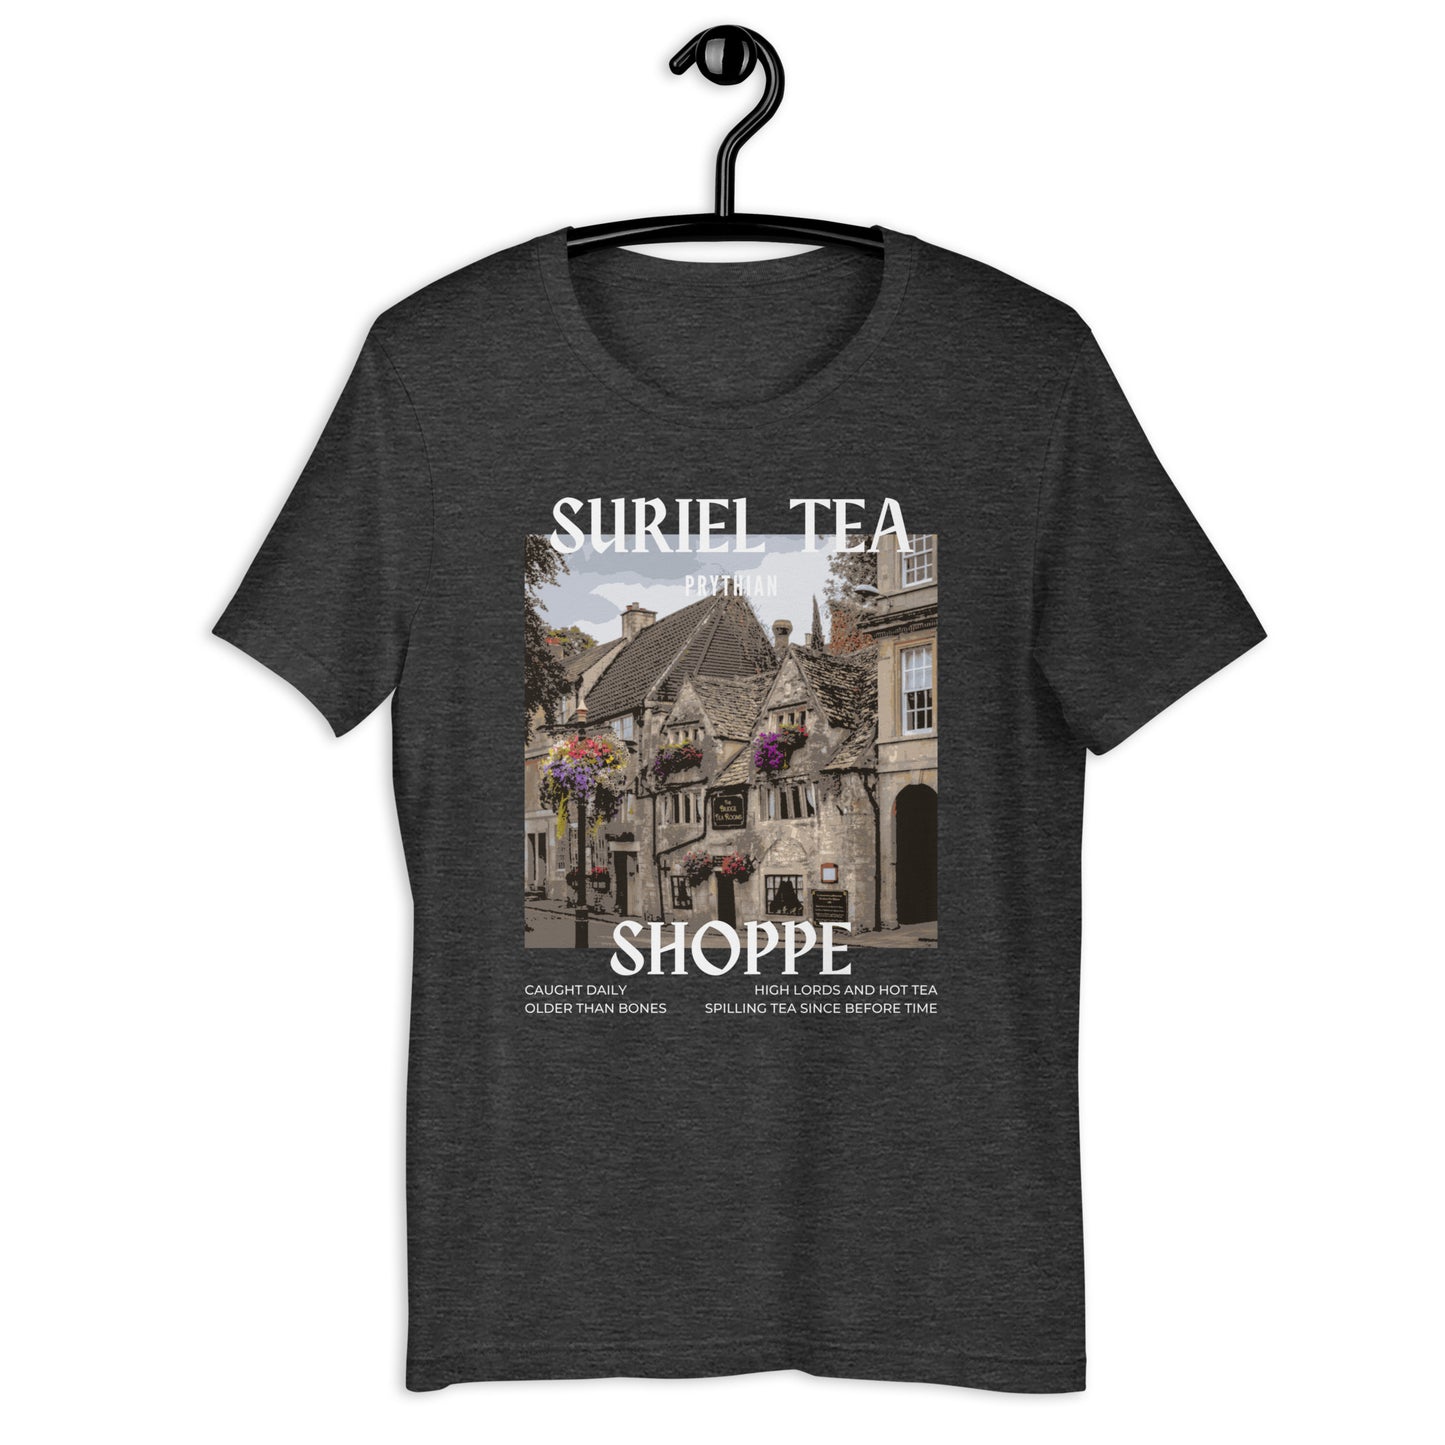 The Suriel Tea Shoppe Shirt